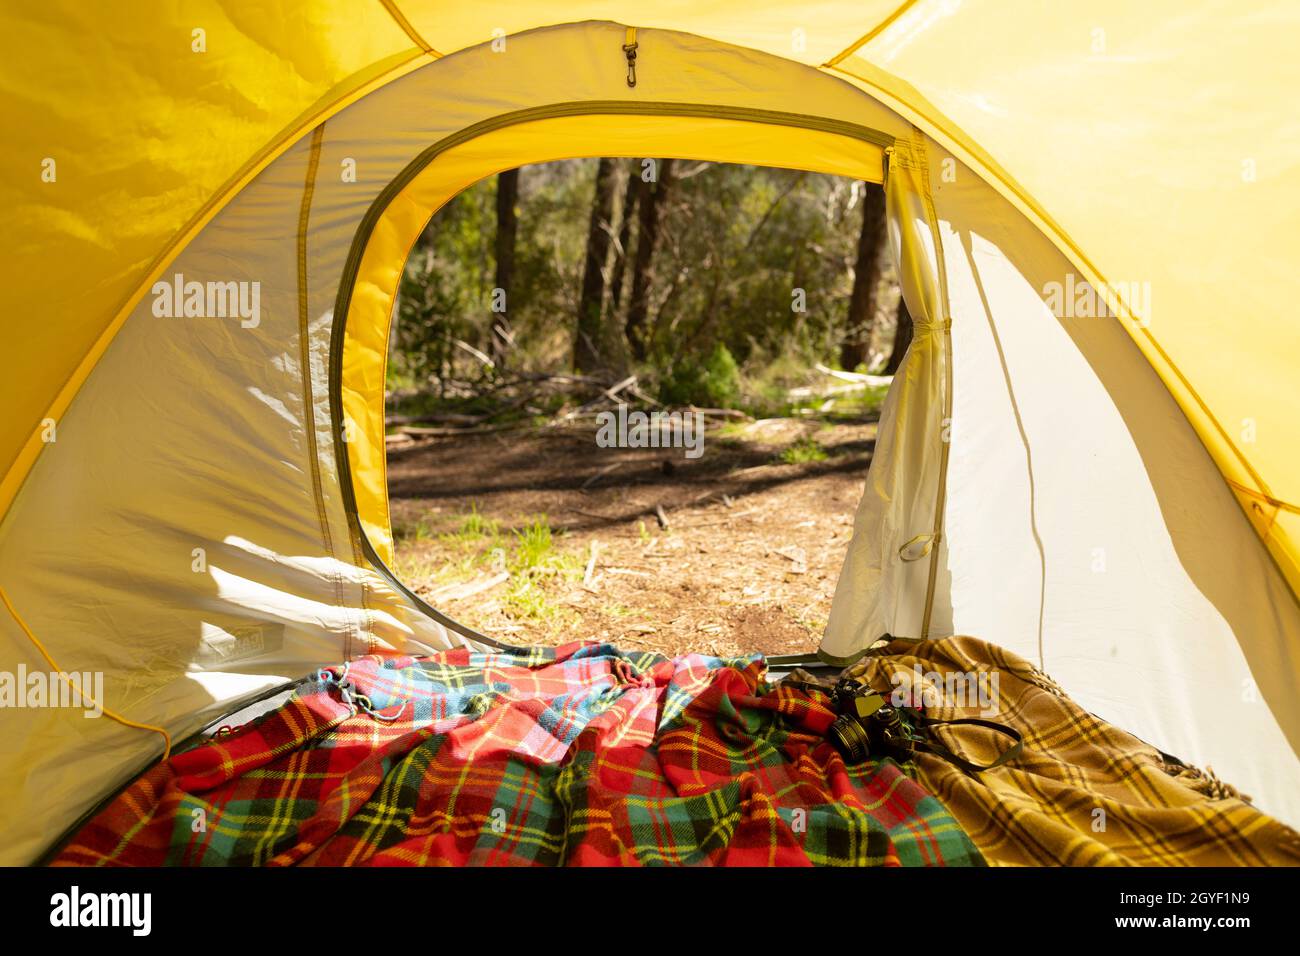 All'interno della tenda gialla sul lato del paese Foto Stock